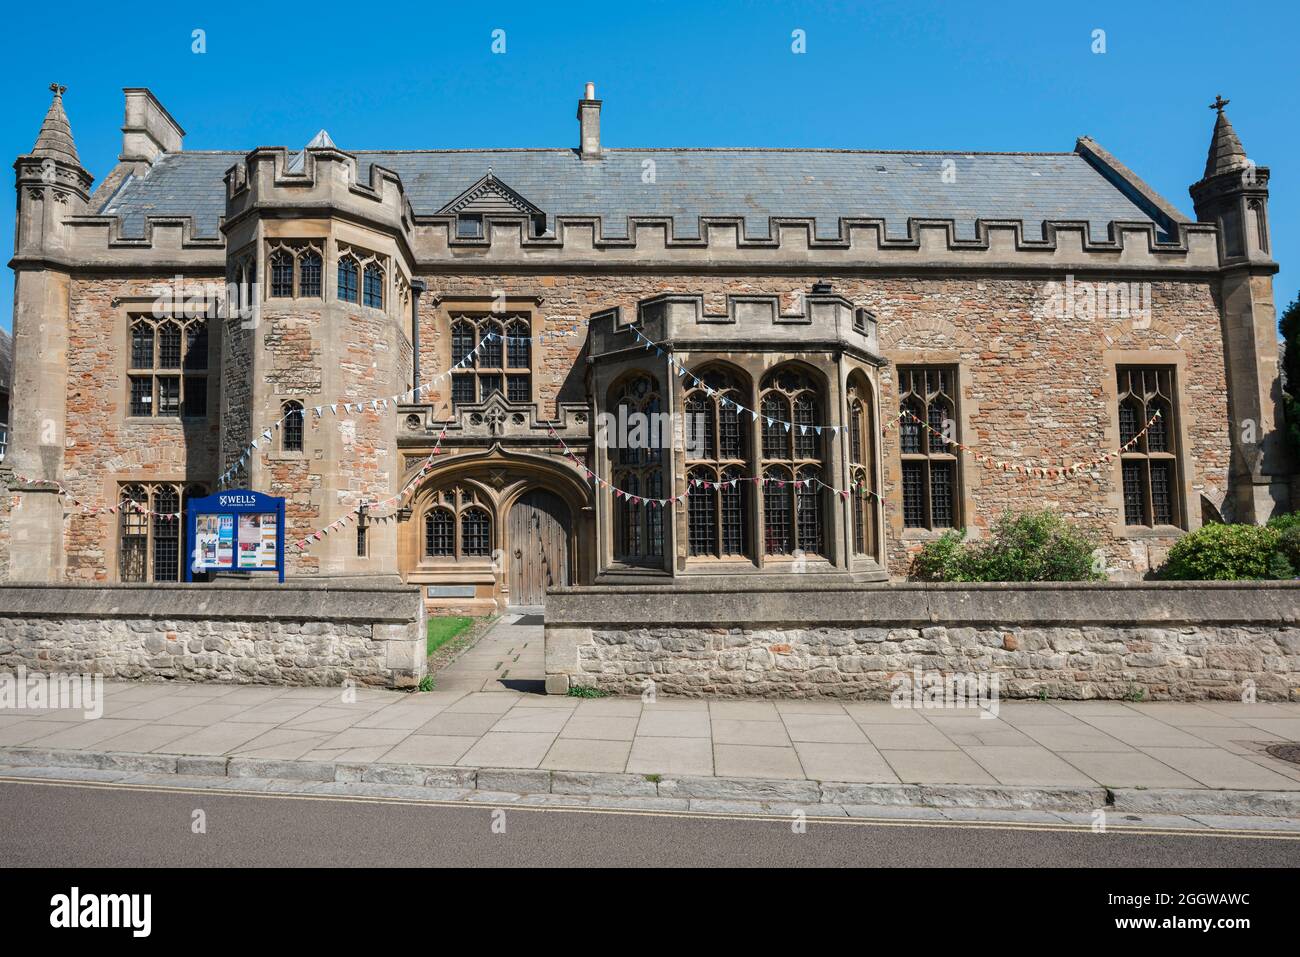 Wells Cathedral Music School, vue sur le bâtiment médiéval du XVe siècle maintenant utilisé comme école de musique de la cathédrale dans la ville de Wells, Angleterre, Royaume-Uni Banque D'Images